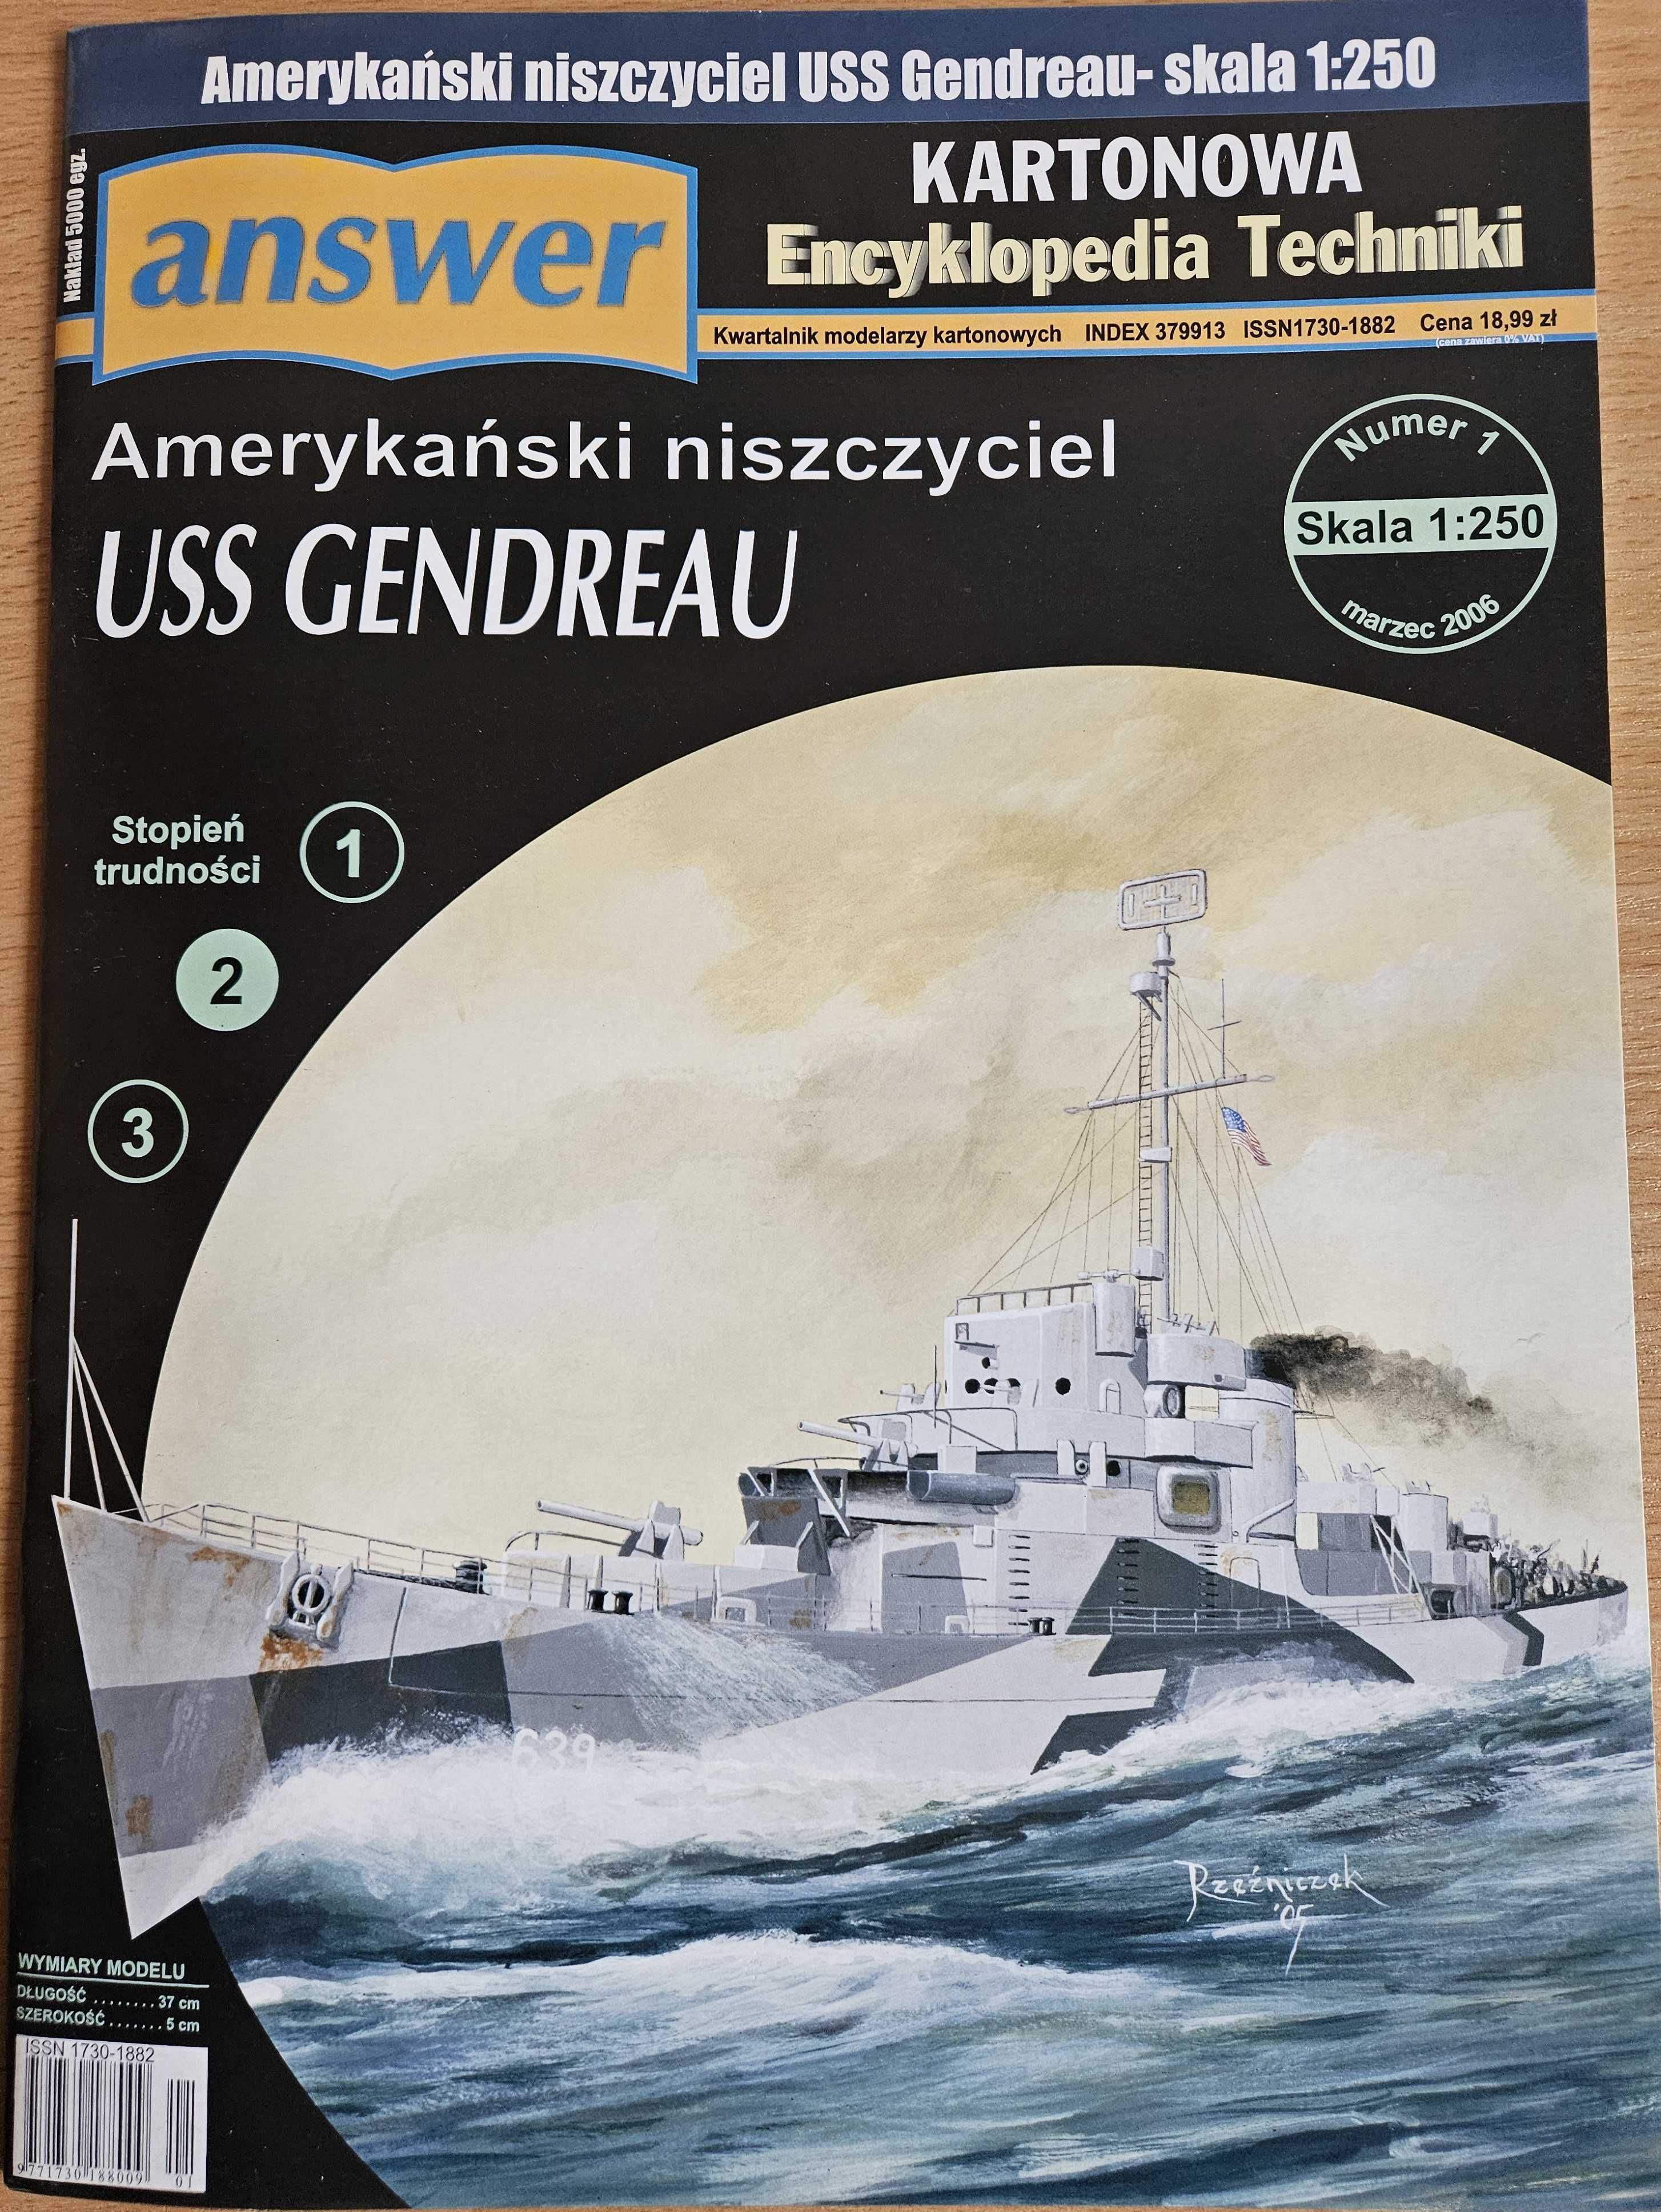 Amerykański Niszczyciel USS GENDREAU wyd. ANSWER